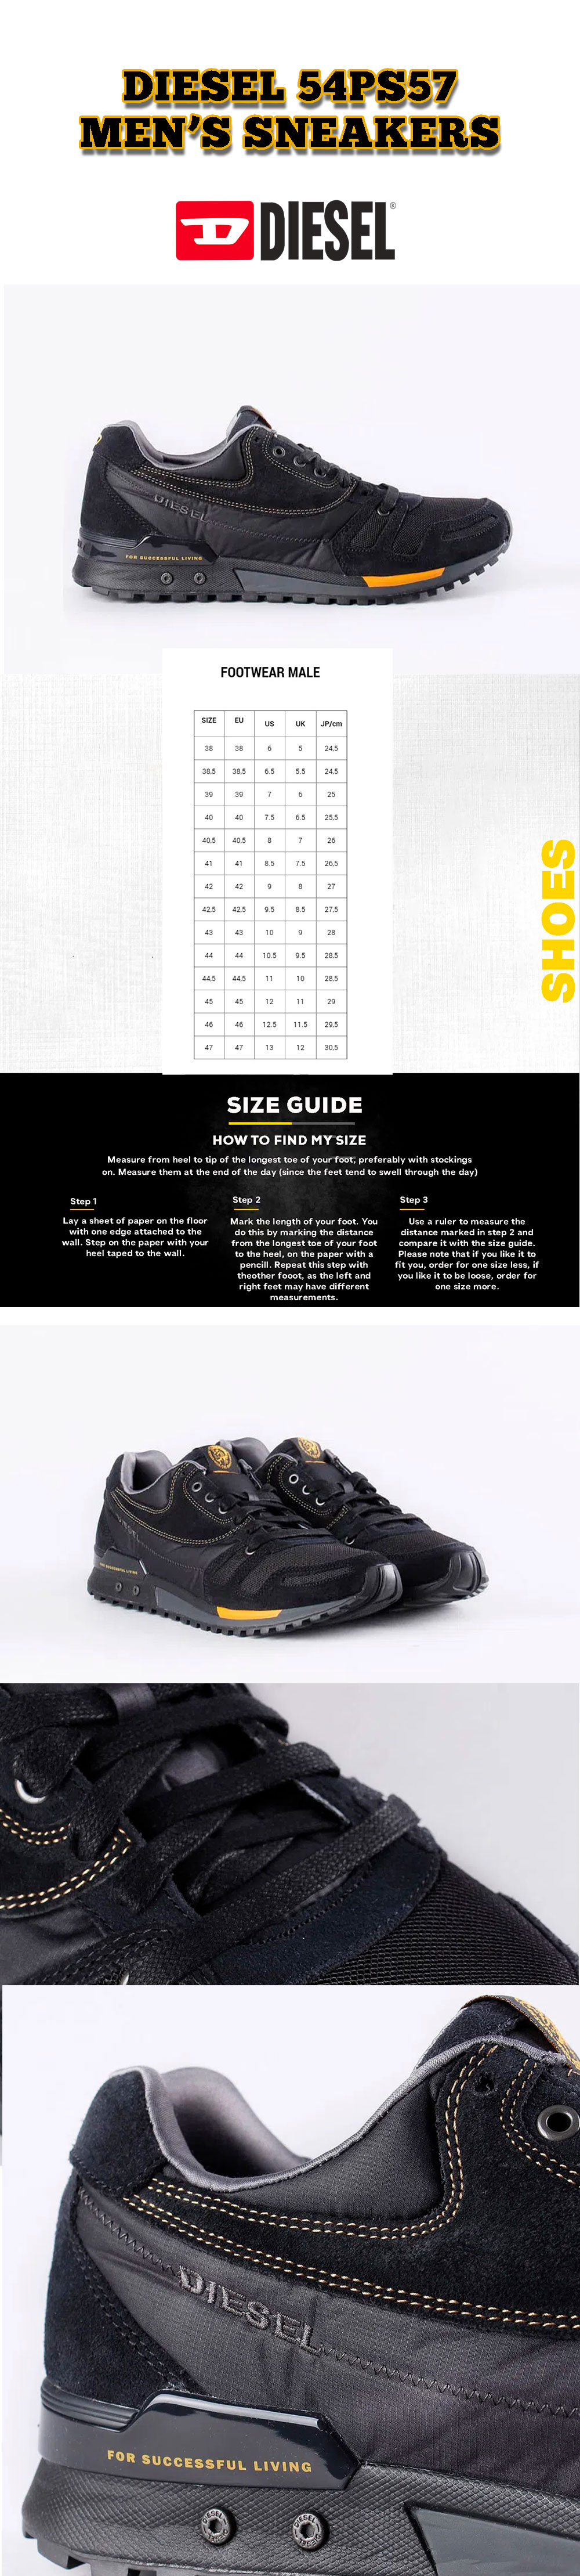 Diesel 54PS57 Men's Sneakers | eBay